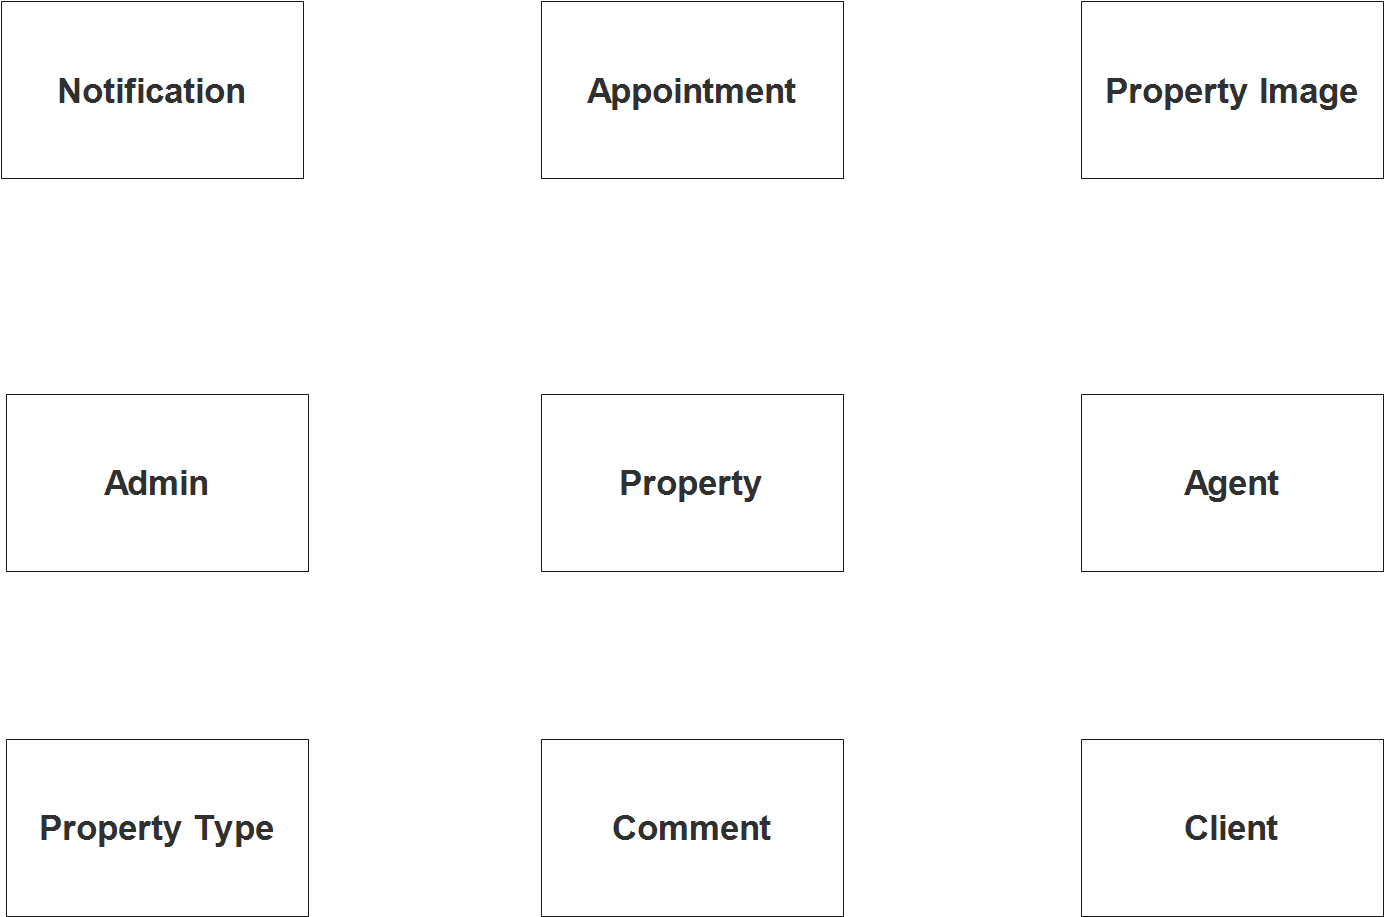 Real Estate Property Management System ER Diagram 